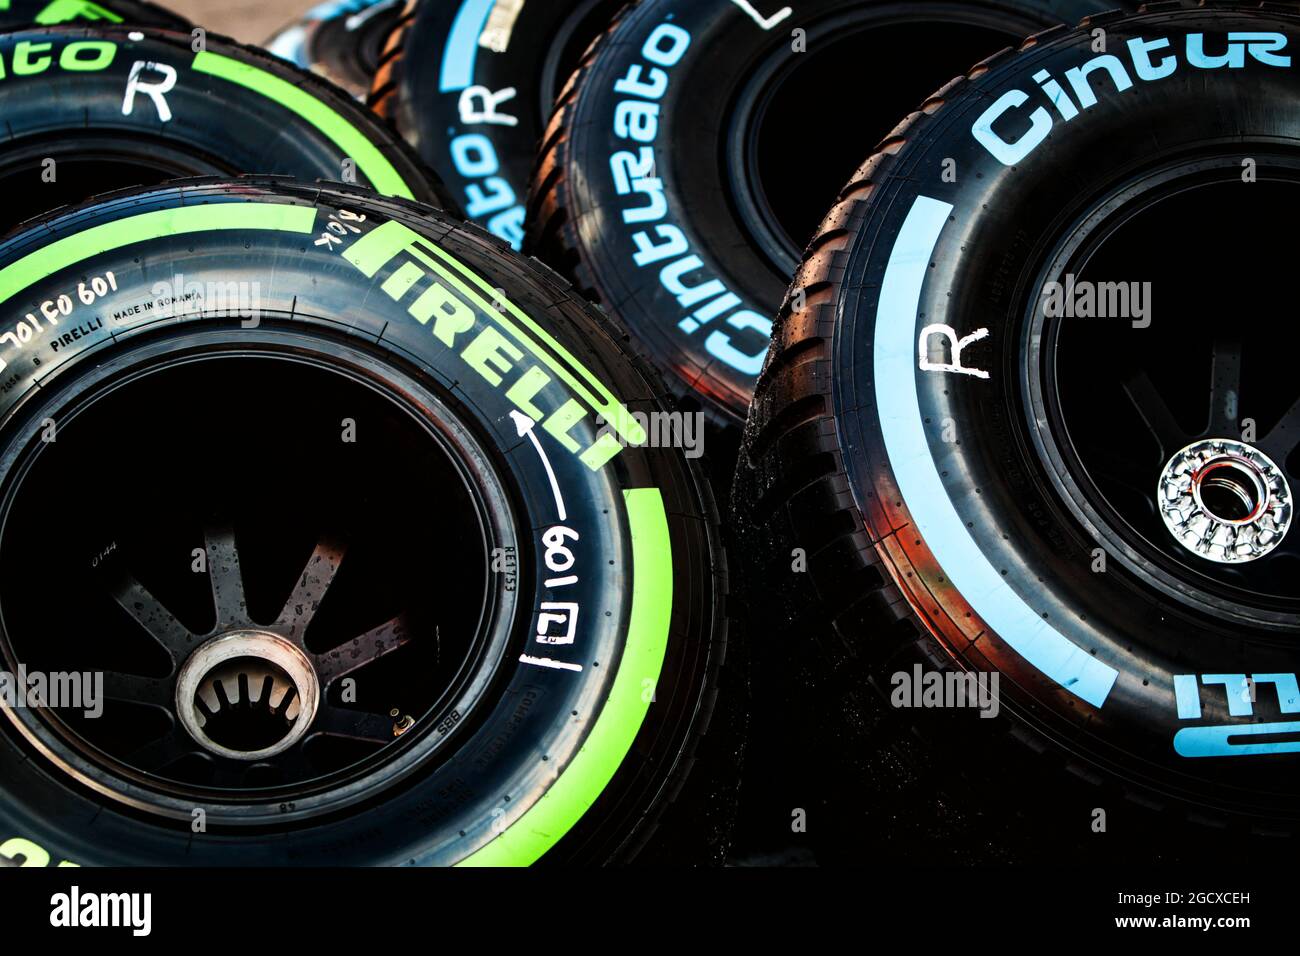 Pneus Pirelli. Test de Formule 1, jour 4, jeudi 2 mars 2017. Barcelone, Espagne. Banque D'Images